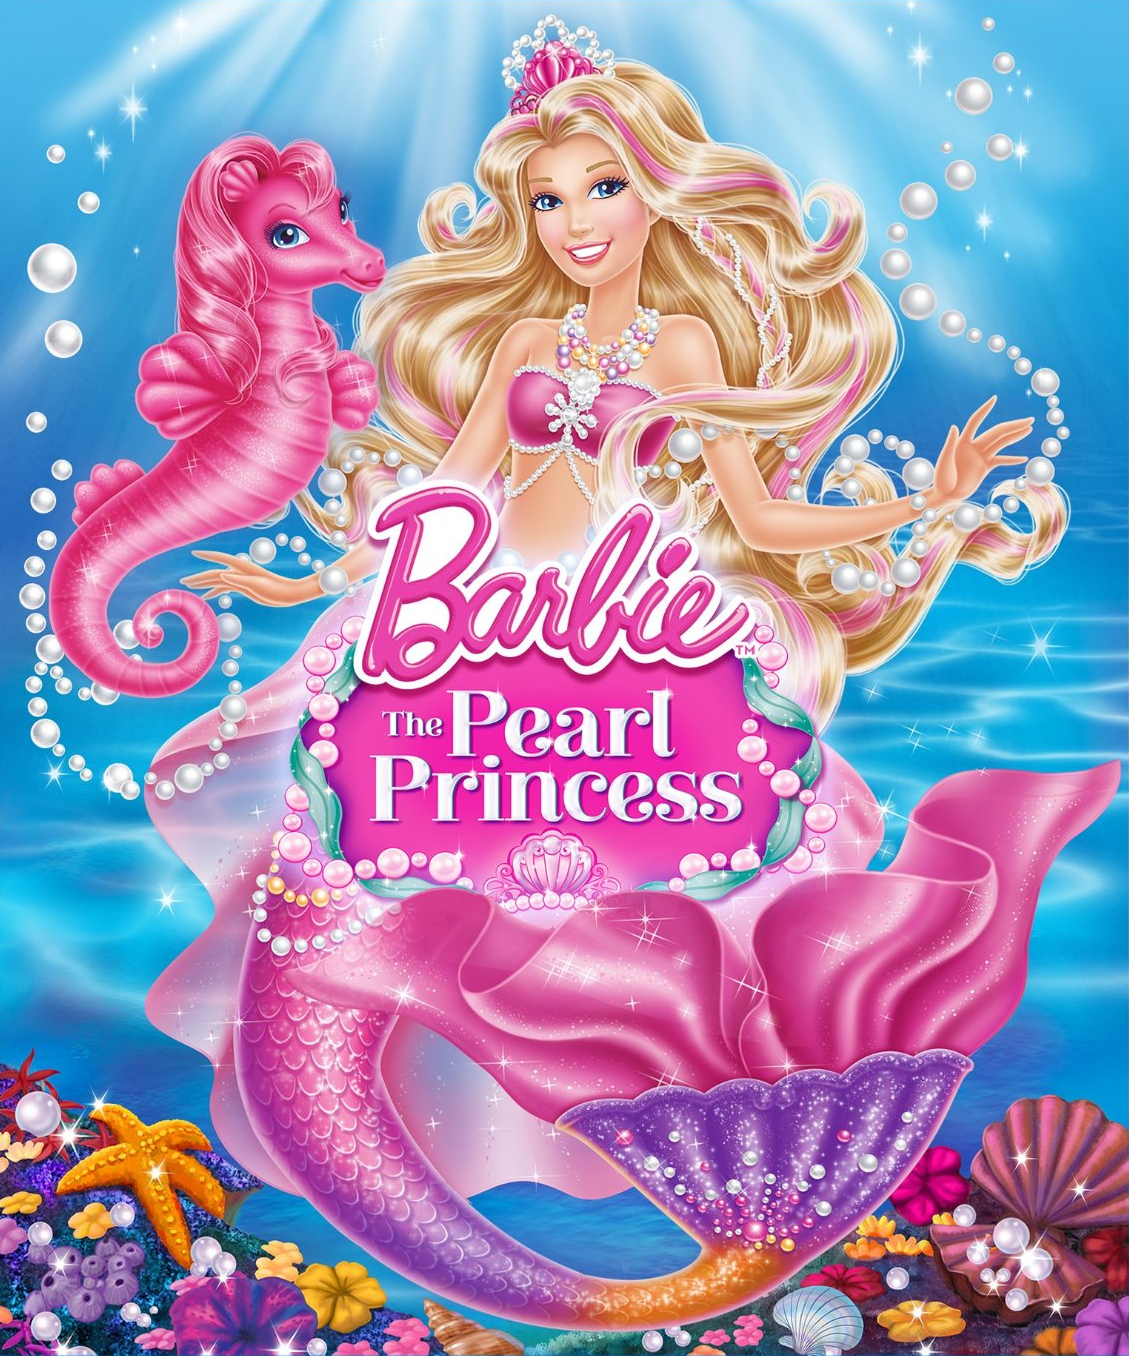  Gambar  Kartun Barbie  Princess  Gambar  Gokil